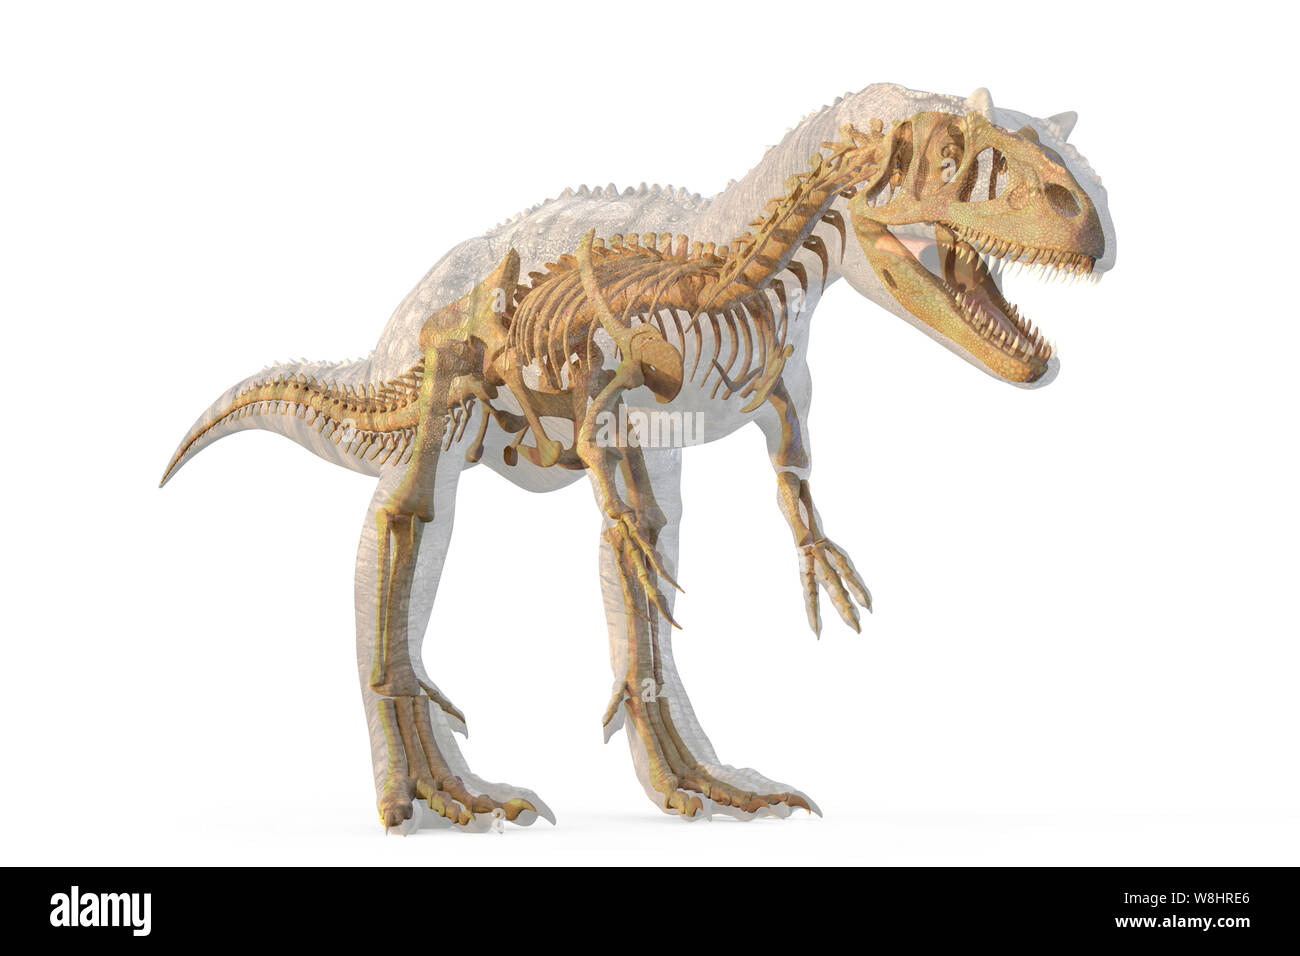 L'Allosaurus structure du squelette, de l'illustration. Allosaurs vécu 155-150 millions d'années durant le Jurassique tardif. Banque D'Images